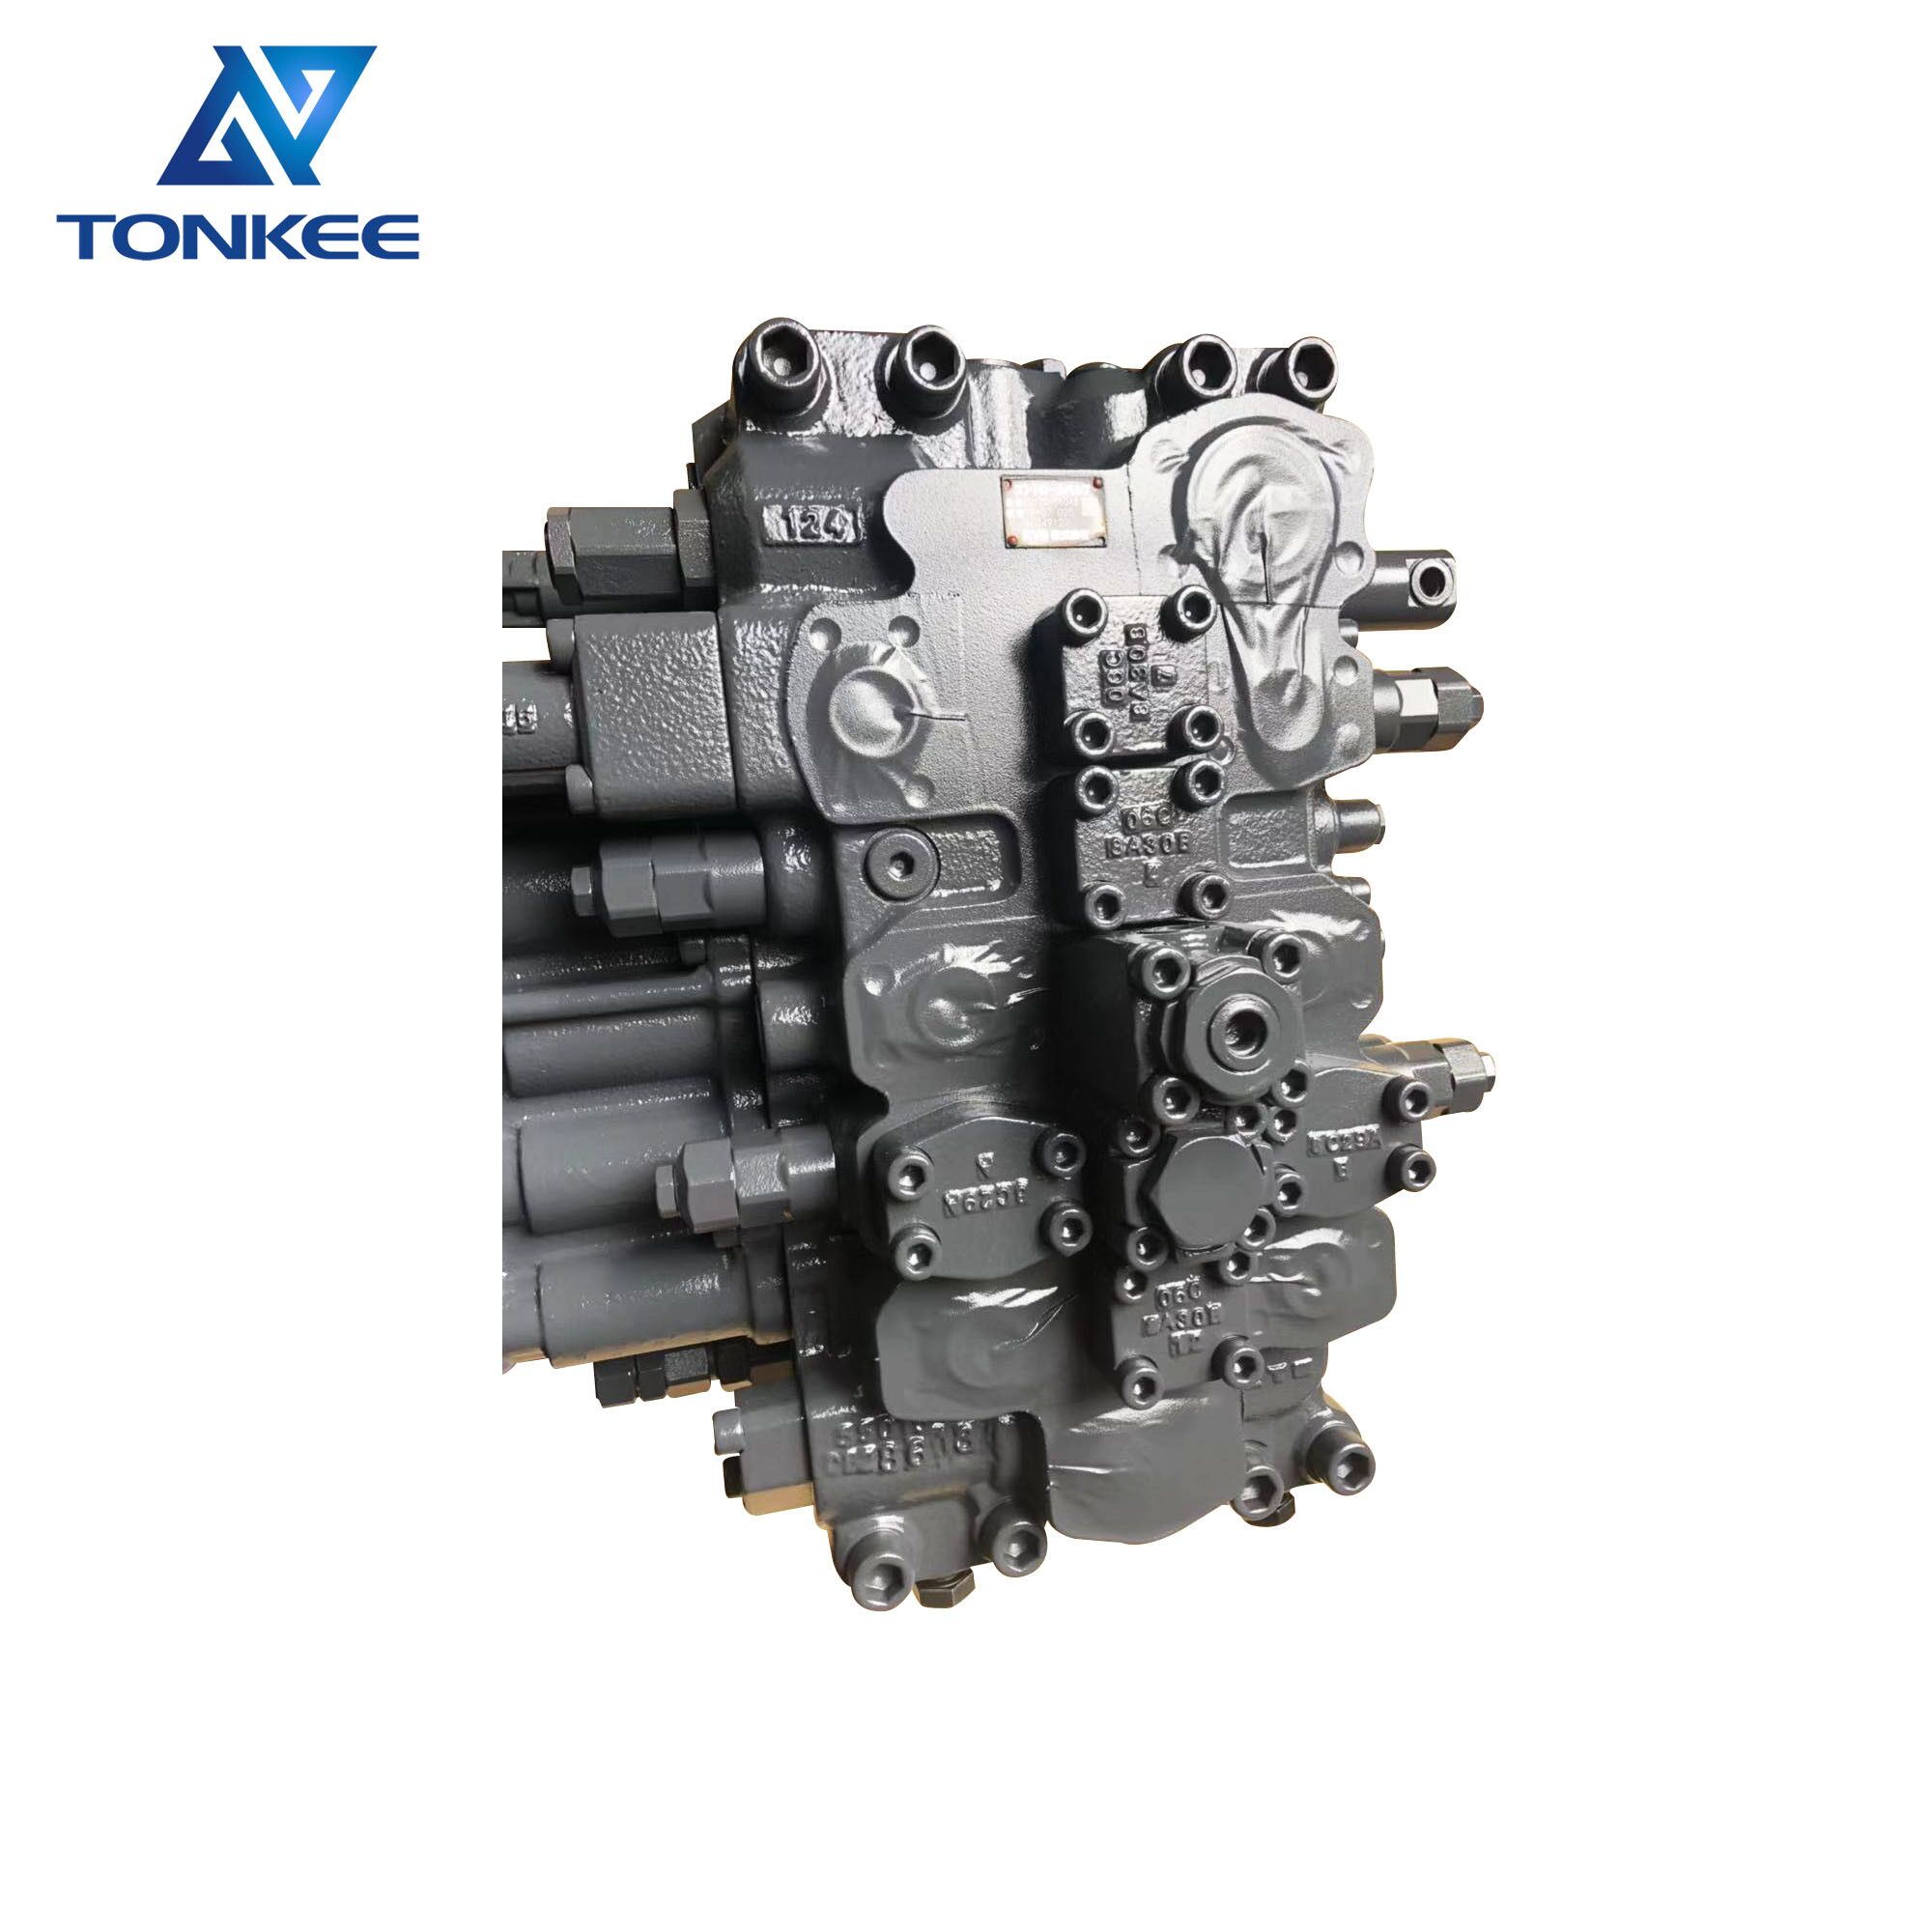 426-00199 KYB C0170-56048 60349127 KVMG270 KVMG-270-XB main control valve SOLAR 300LC-V  DH300-5 hydraulic excavator MCV main control valve